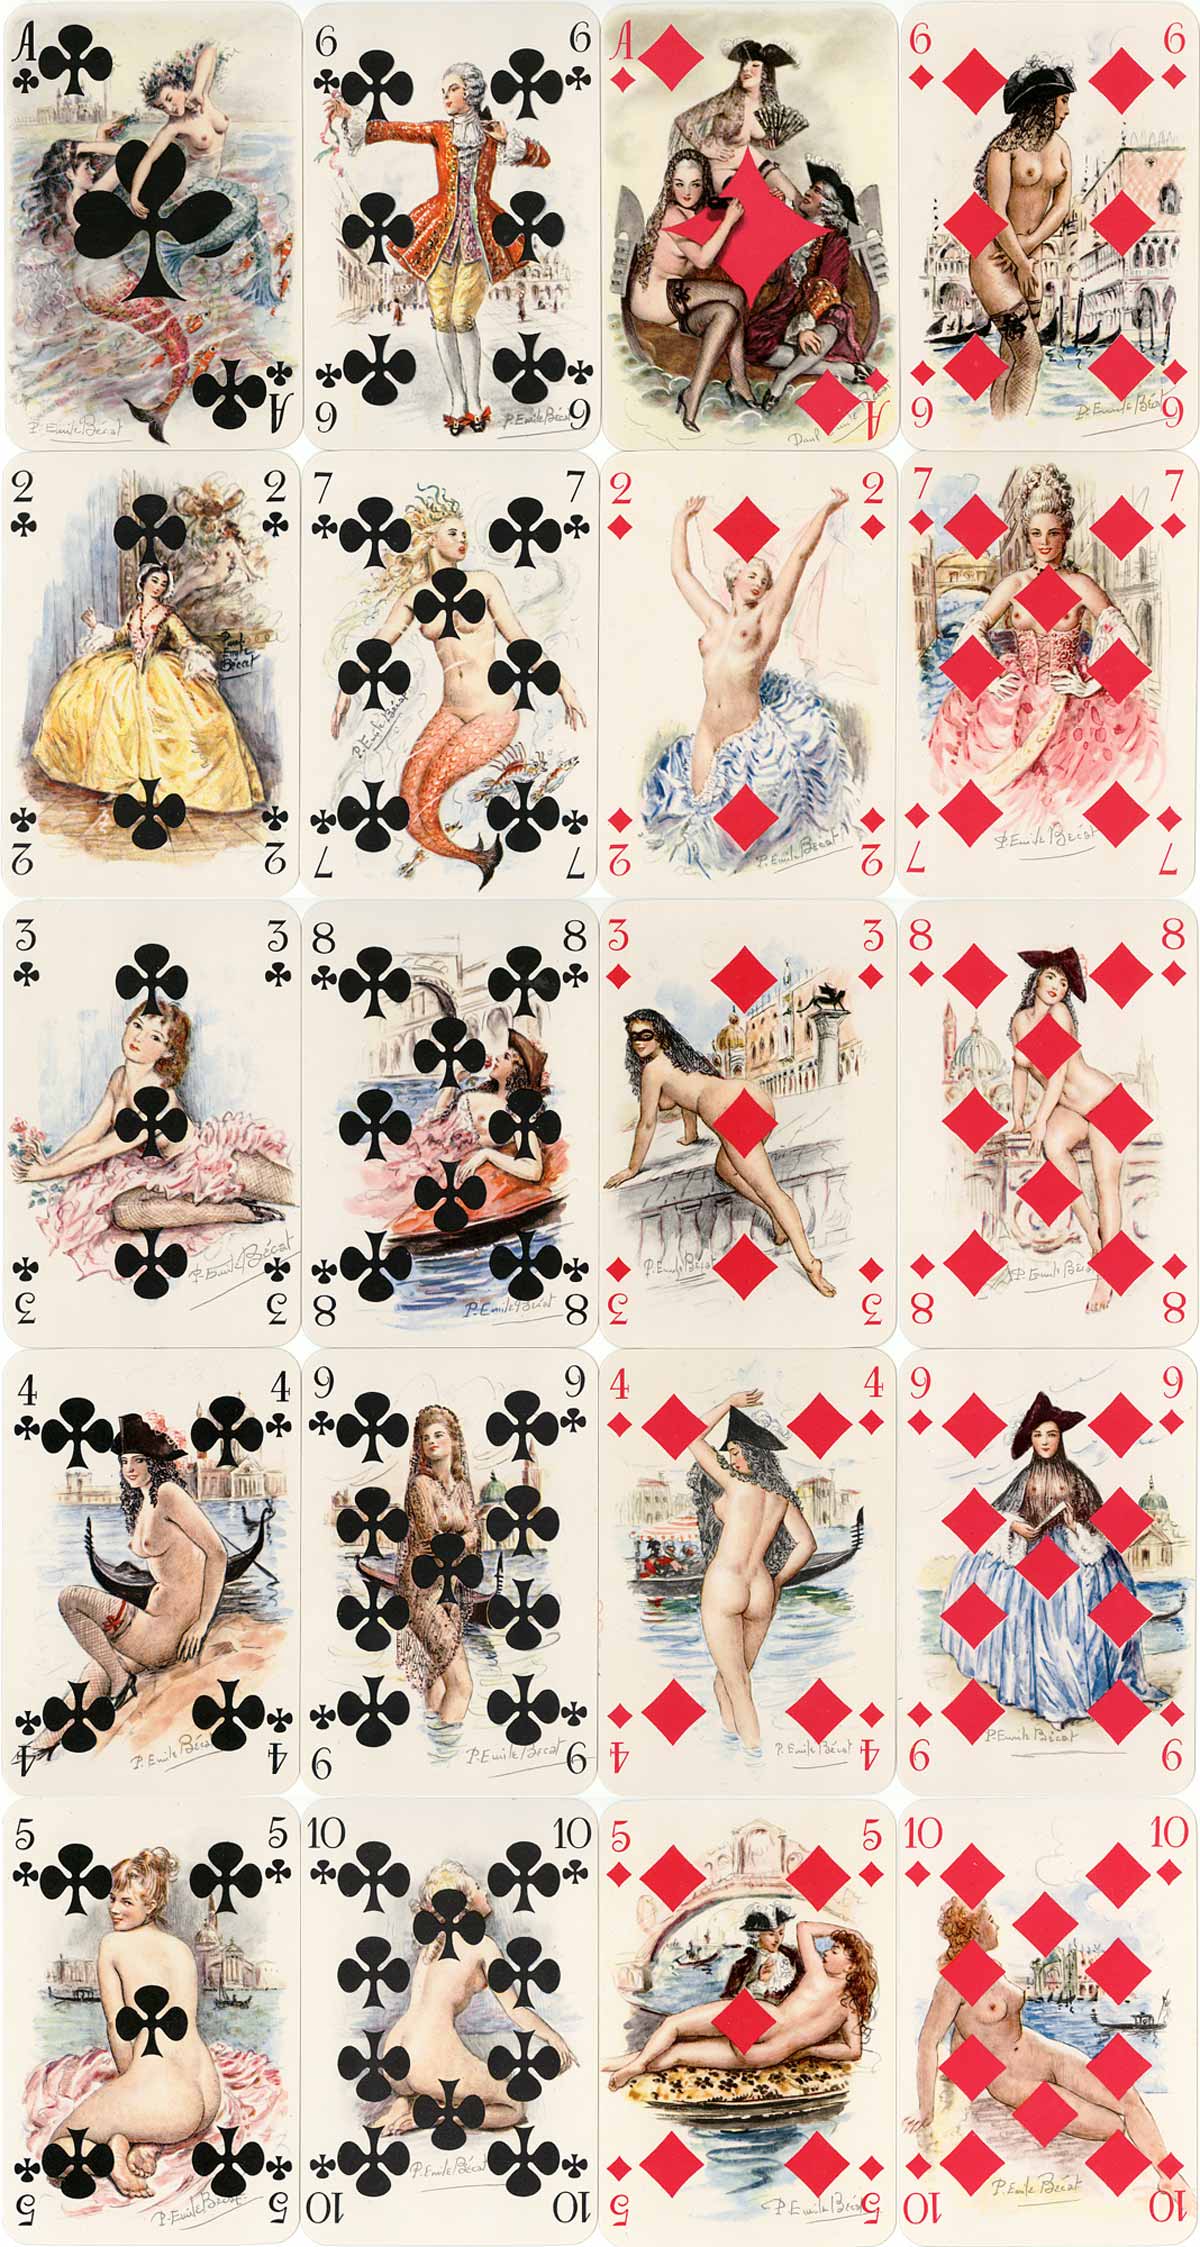 Mémoires de Casanova artistic and lightly risqué playing cards with paintings by Paul-Émile Bécat, published by Éditions Philibert, Paris, c.1960. 